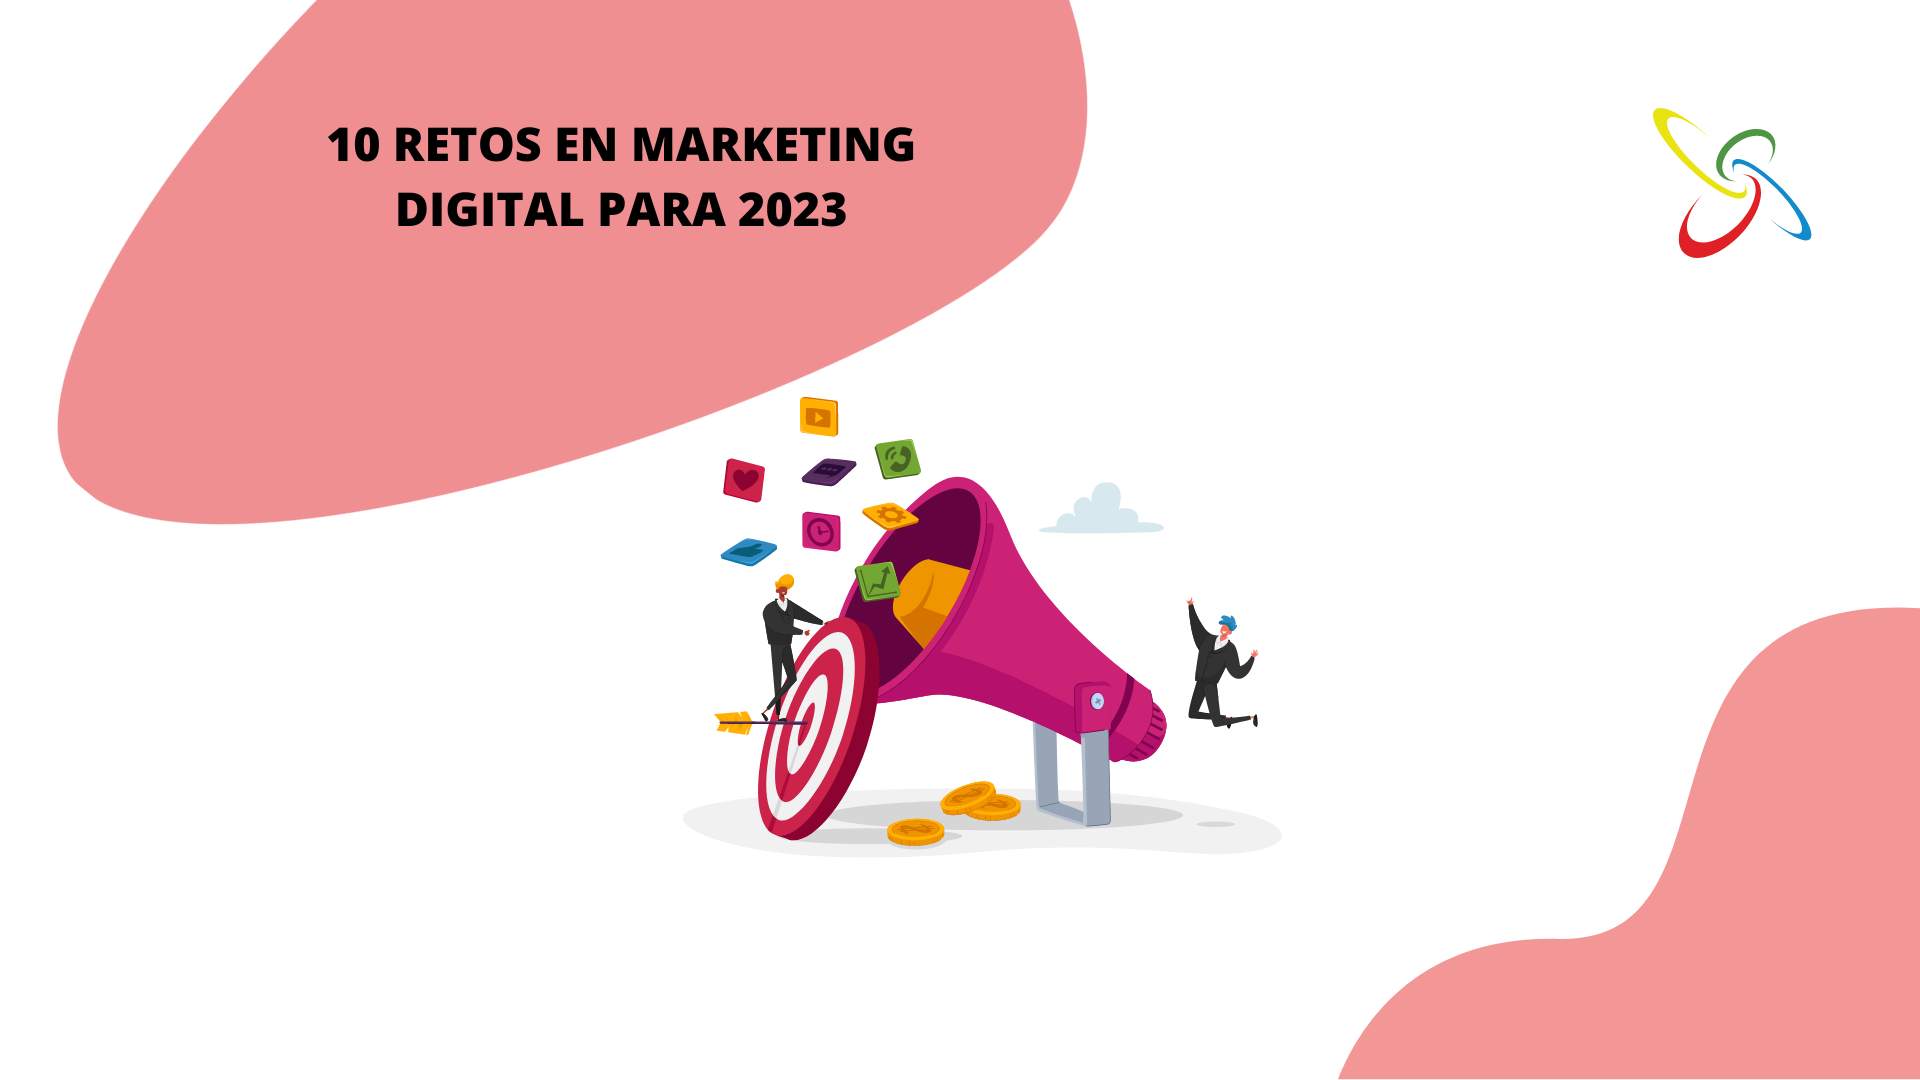 10 retos en marketing digital para 2023